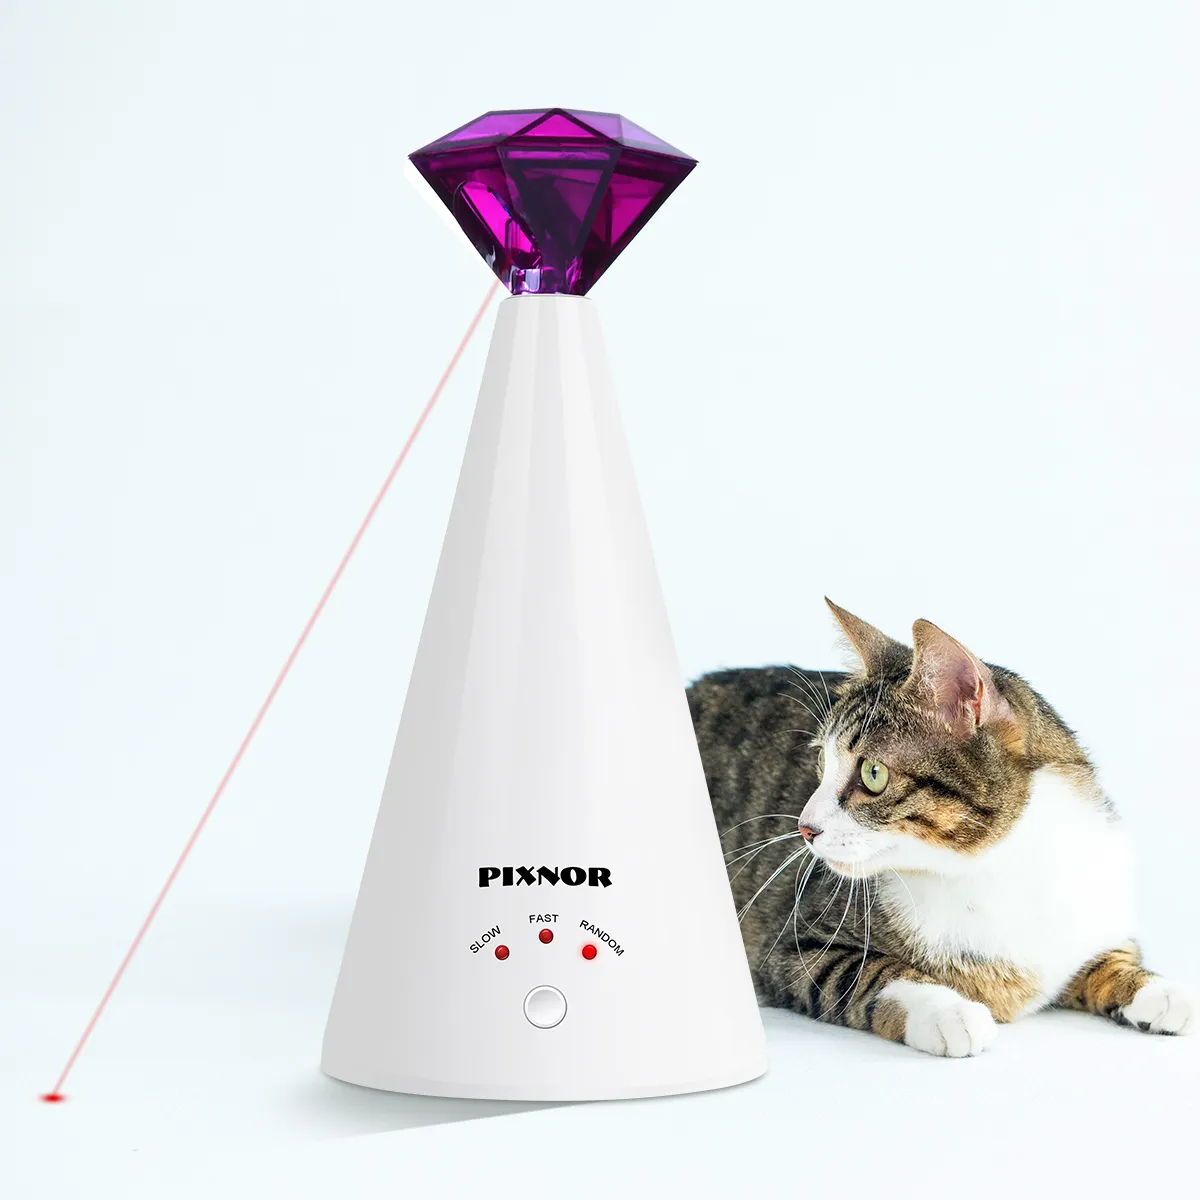 Pixnor Smart Laser Deving Device Электрическое игрушечное домашнее интерактивный кот регулируемый 3 скорости PET POMPER PURPLE 2011121102376